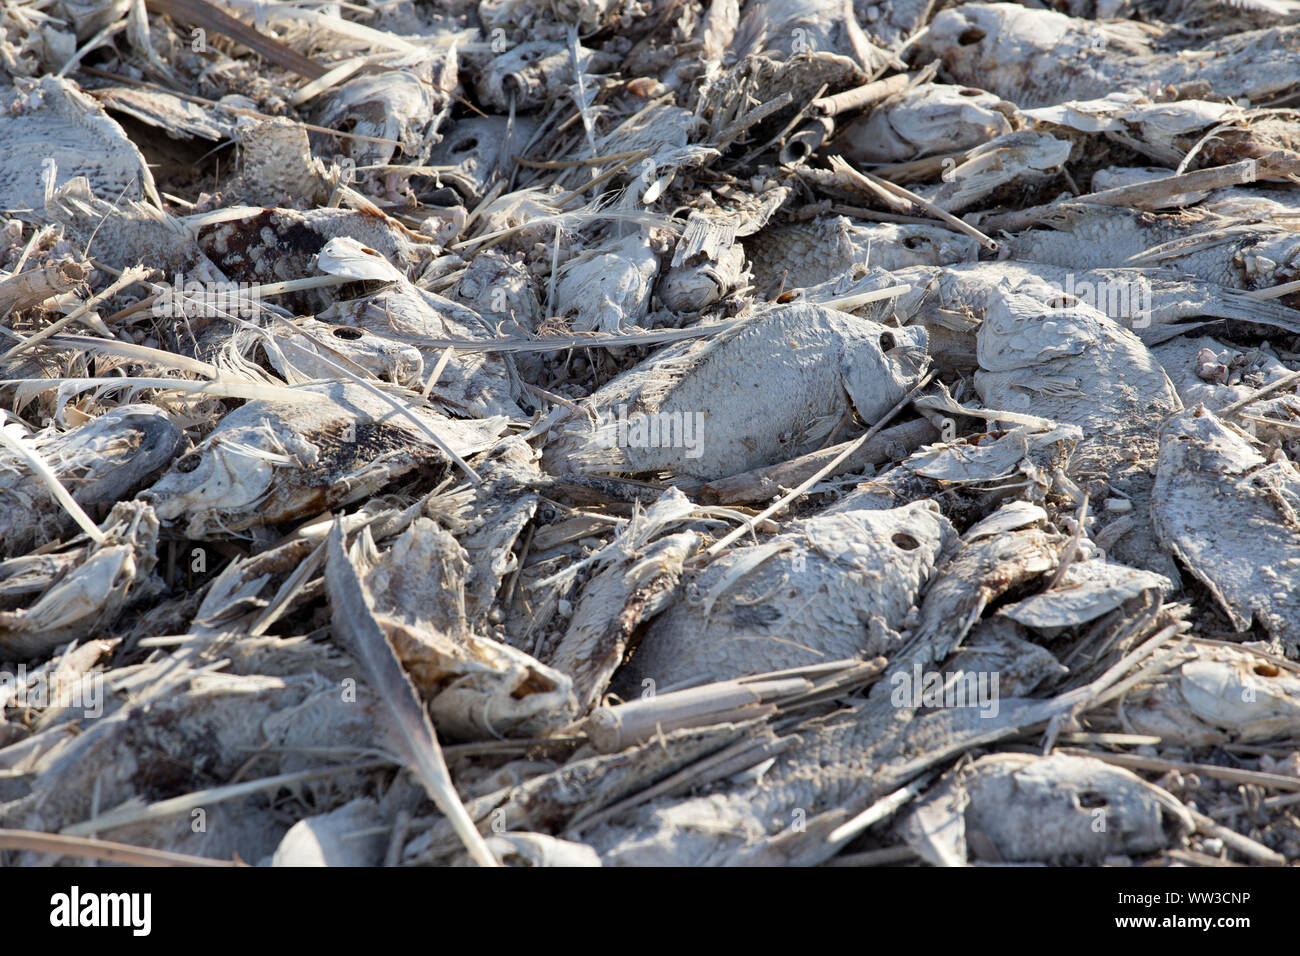 Mar de Salton mortandad de peces Foto de stock